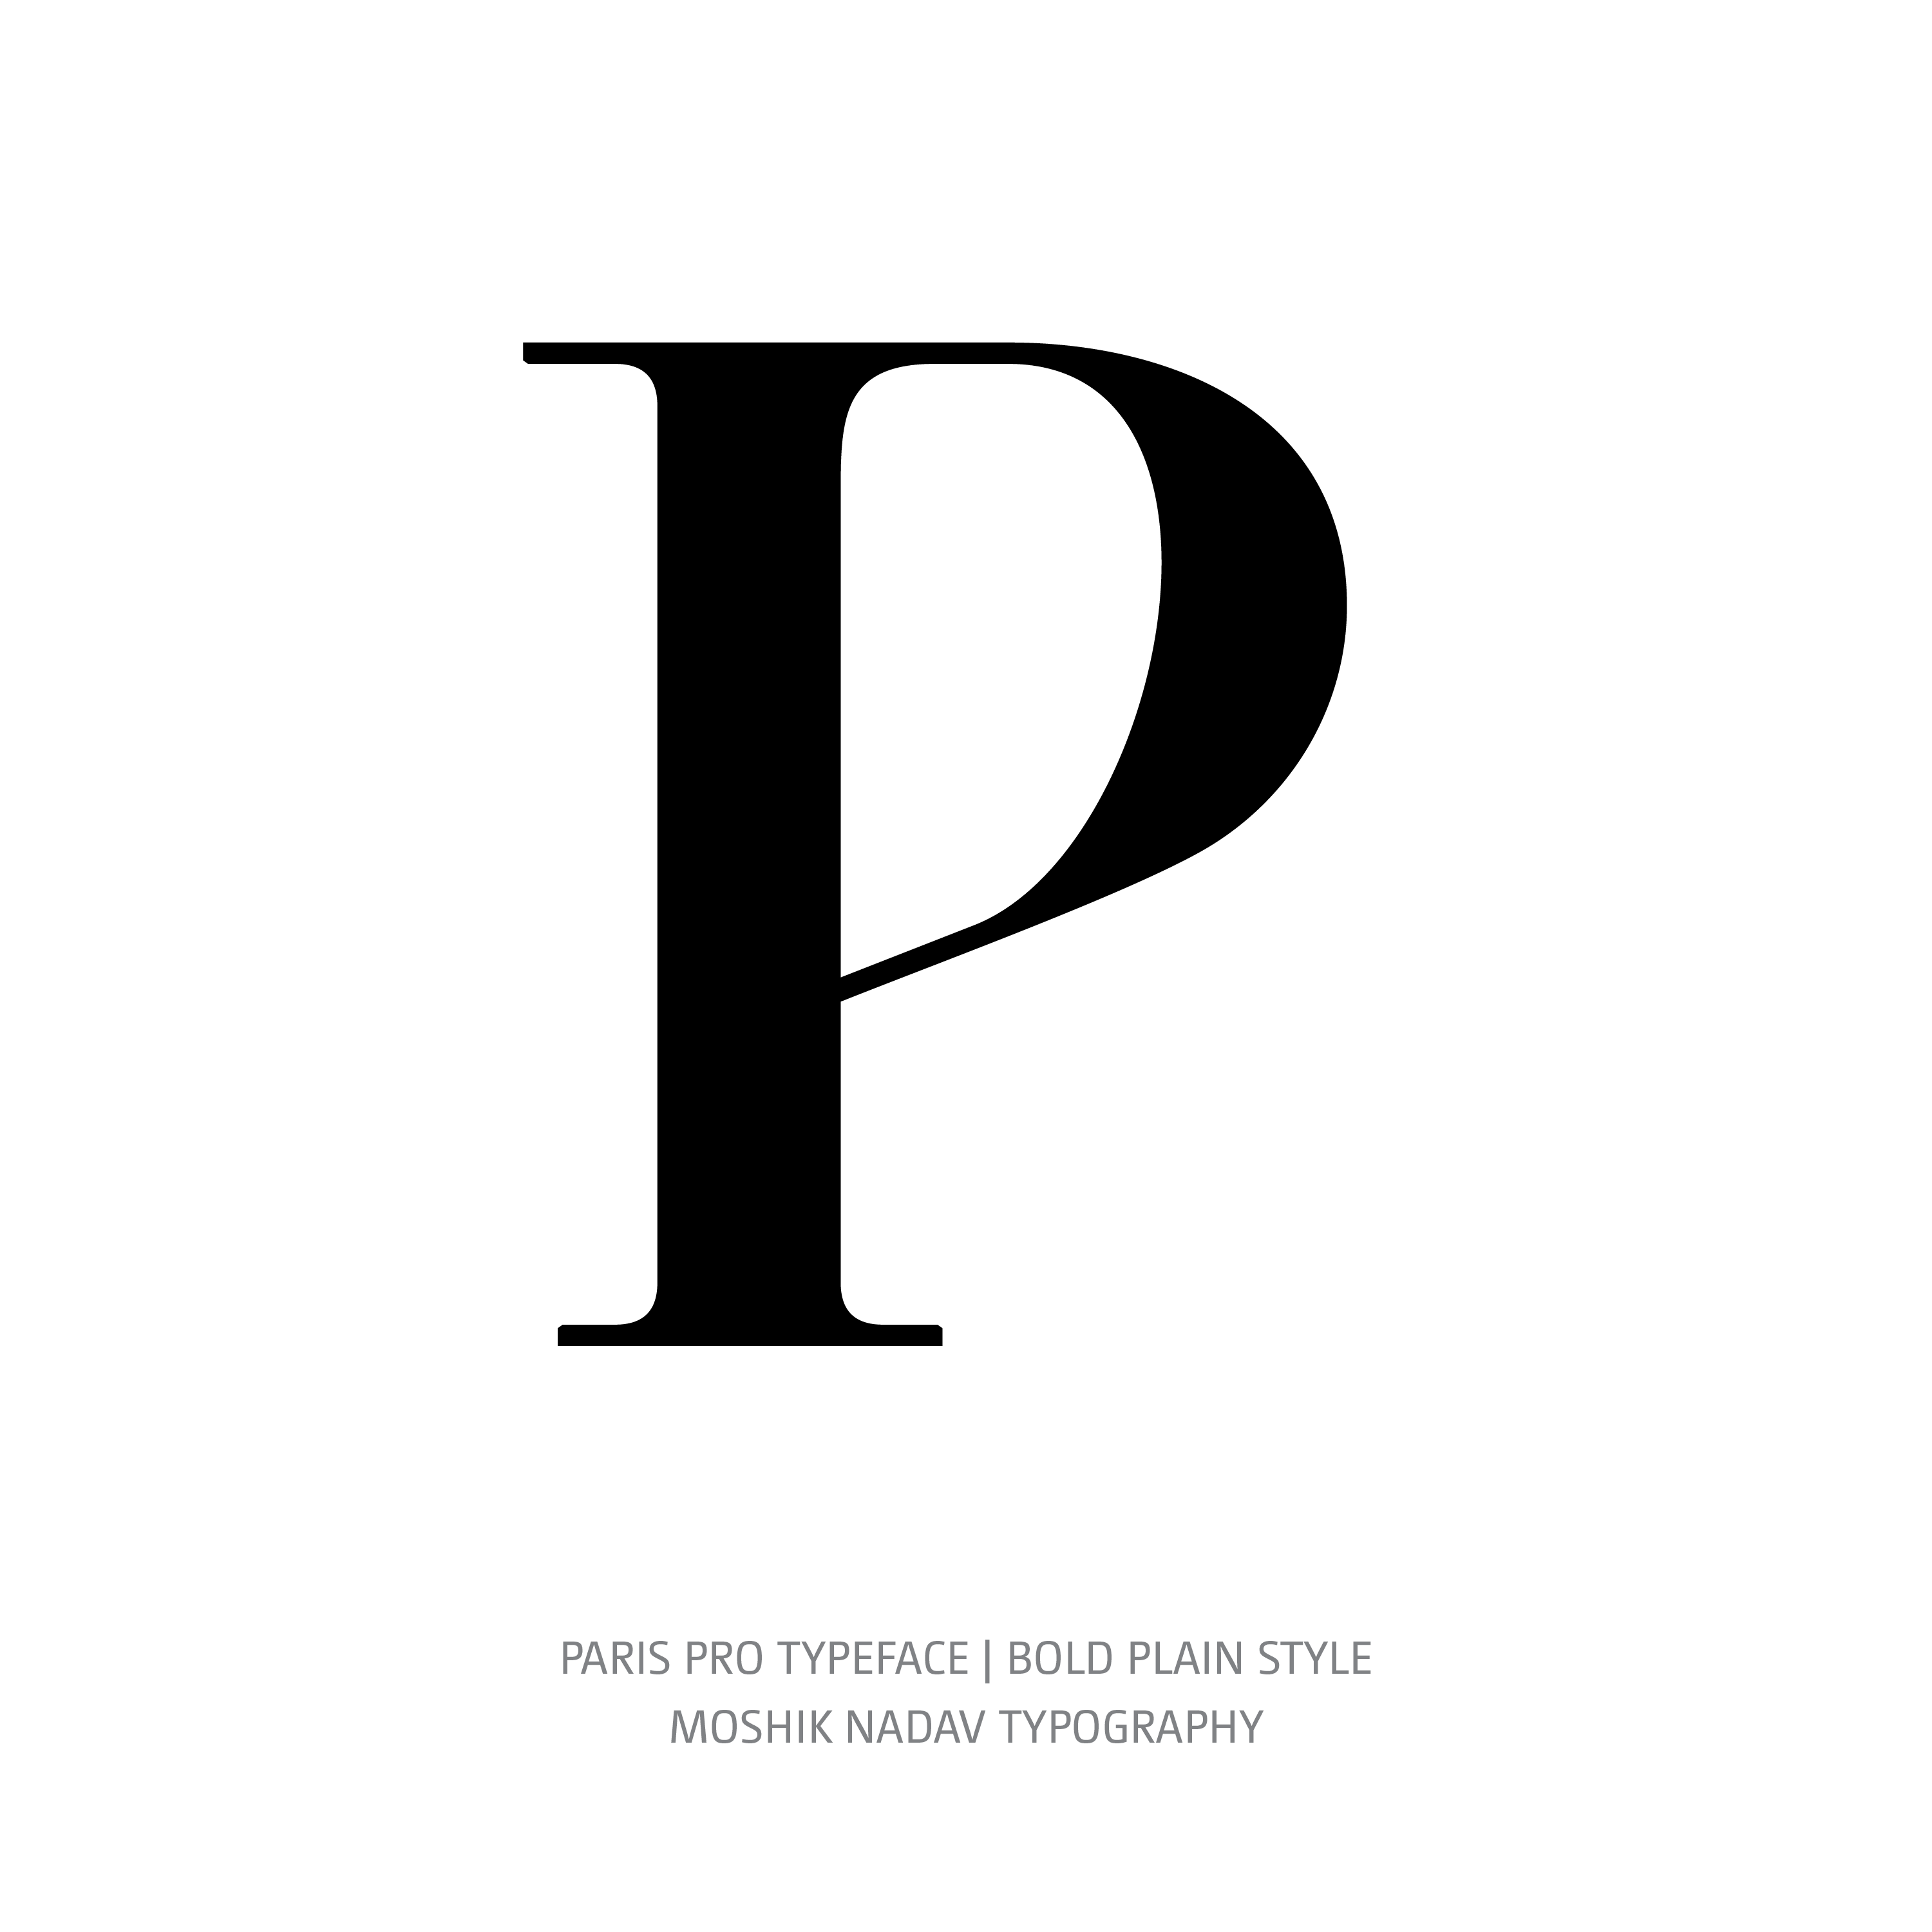 Paris Pro Typeface Bold Plain P